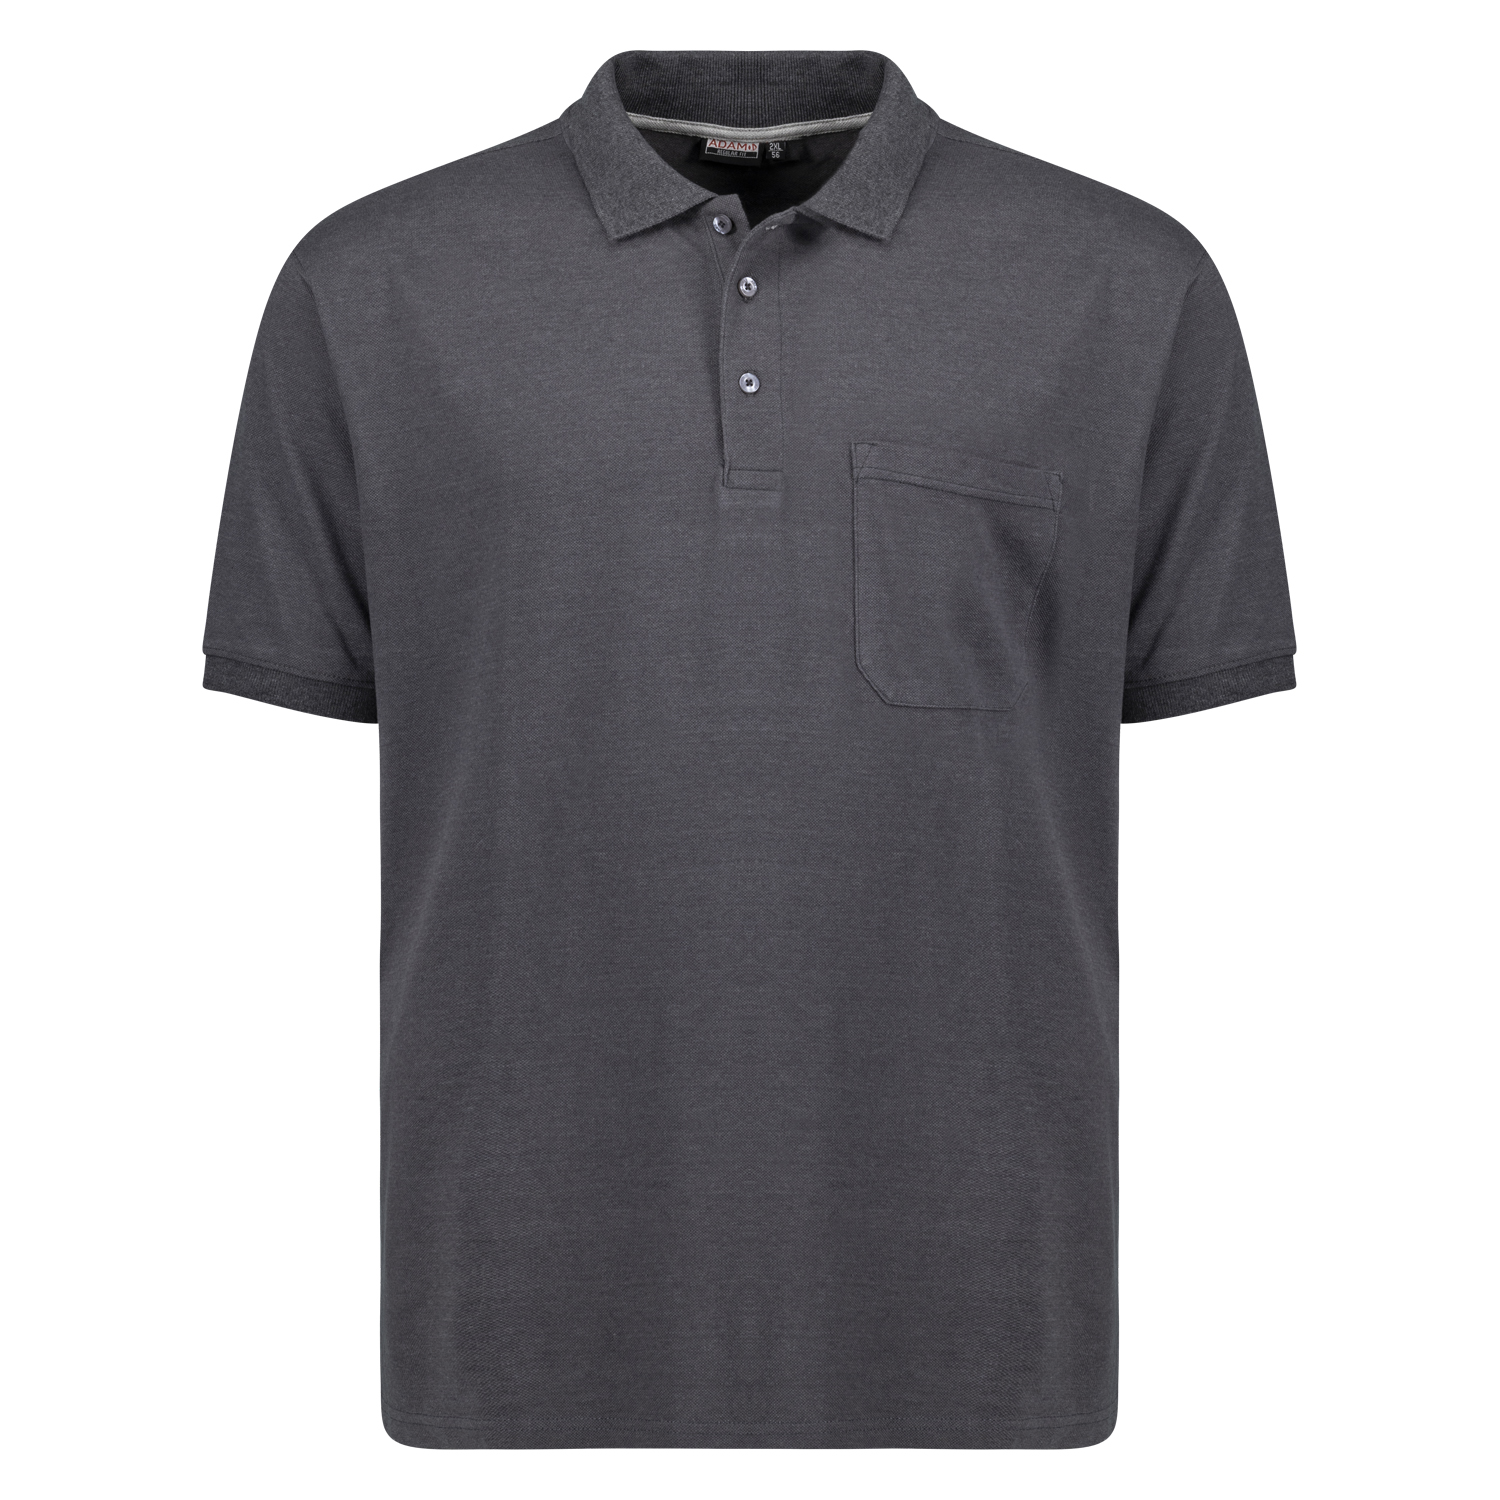 Polo shirt en anthracite chiné à manches courtes série Klaas REGULAR FIT by ADAMO en grandes tailles jusqu'au 10XL